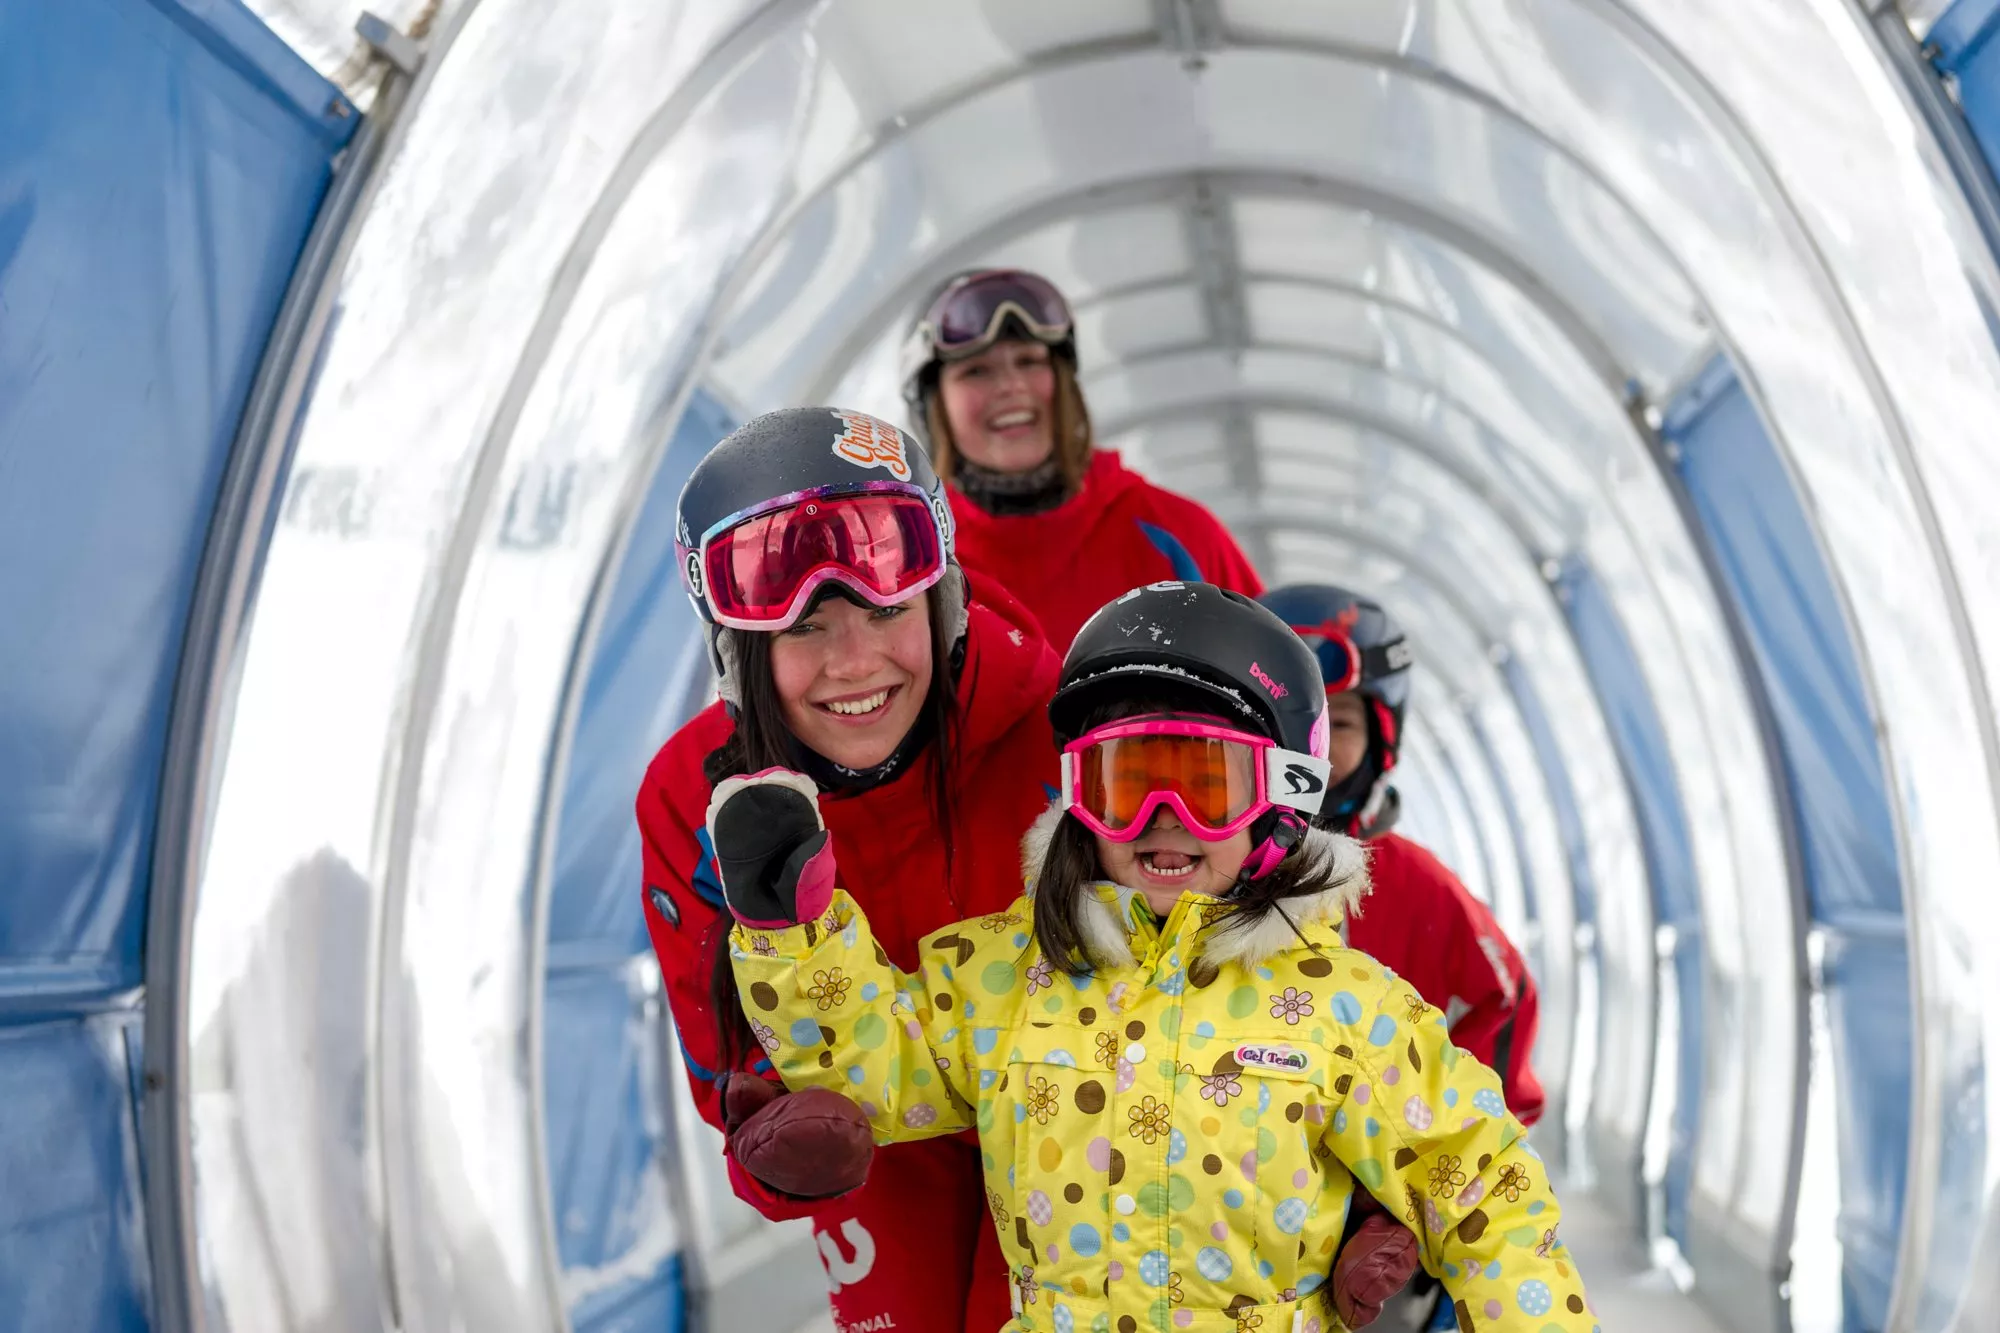 Niseko Ski School in Japan, East Asia | Snowboarding,Skiing - Rated 0.7